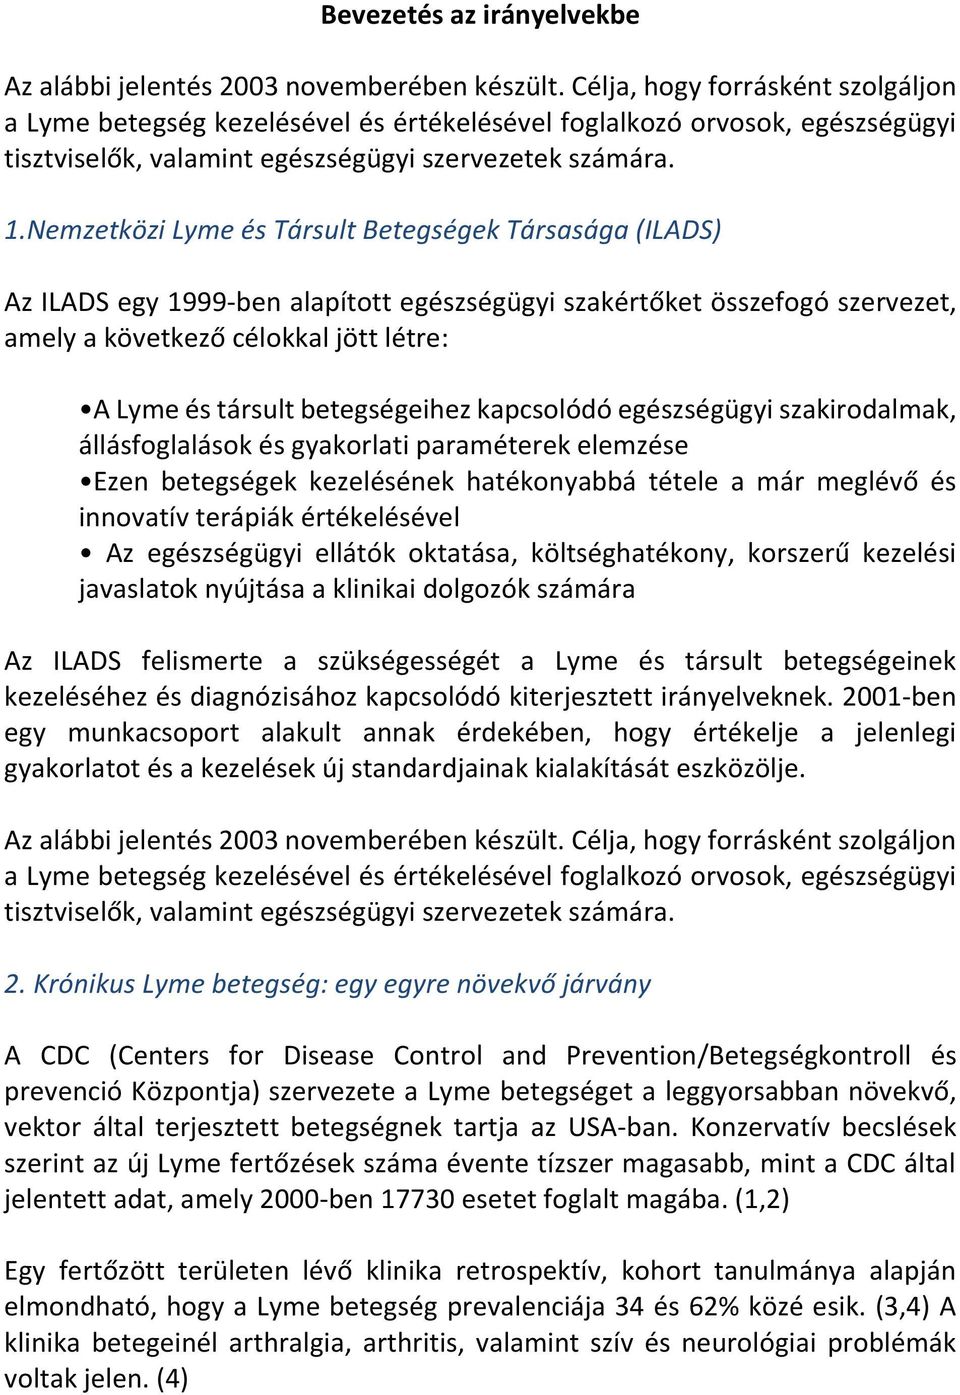 Nemzetközi Lyme és Társult Betegségek Társasága (ILADS) Az ILADS egy 1999-ben alapított egészségügyi szakértőket összefogó szervezet, amely a következő célokkal jött létre: A Lyme és társult